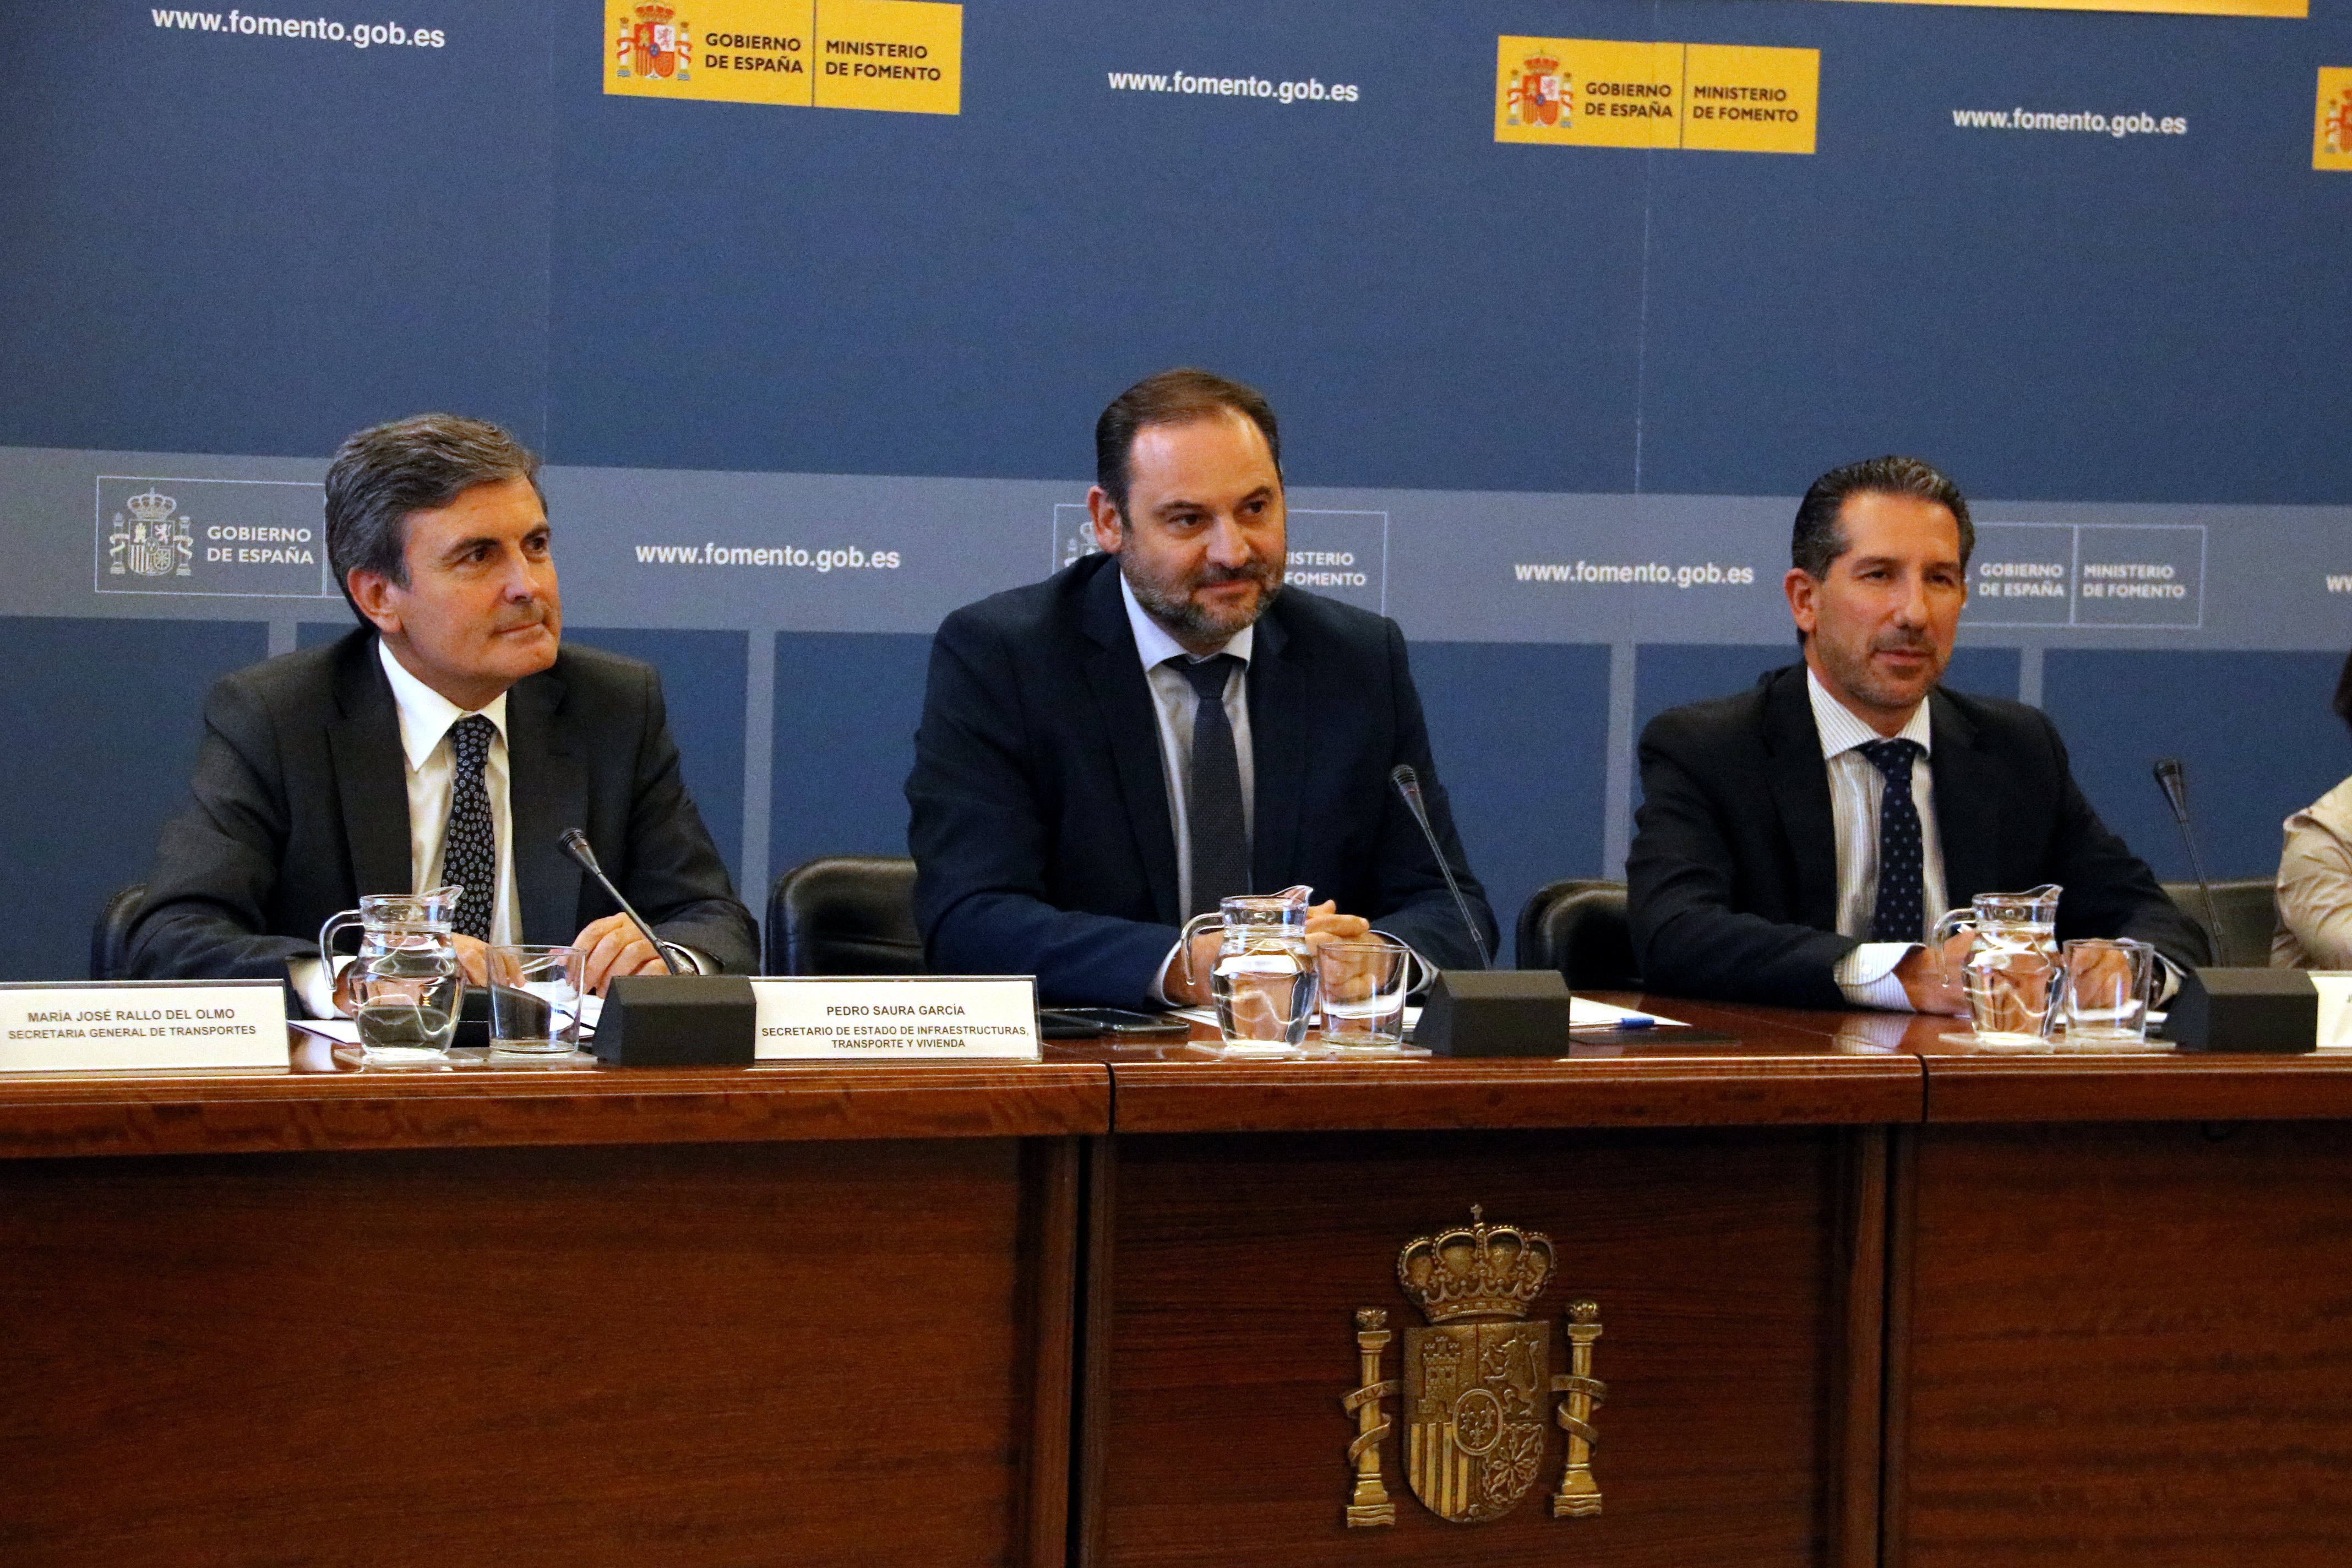 Al centre de la imatge, el ministre de Foment, Jose Luis Ábalos, presidint la Conferència Nacional del Transport